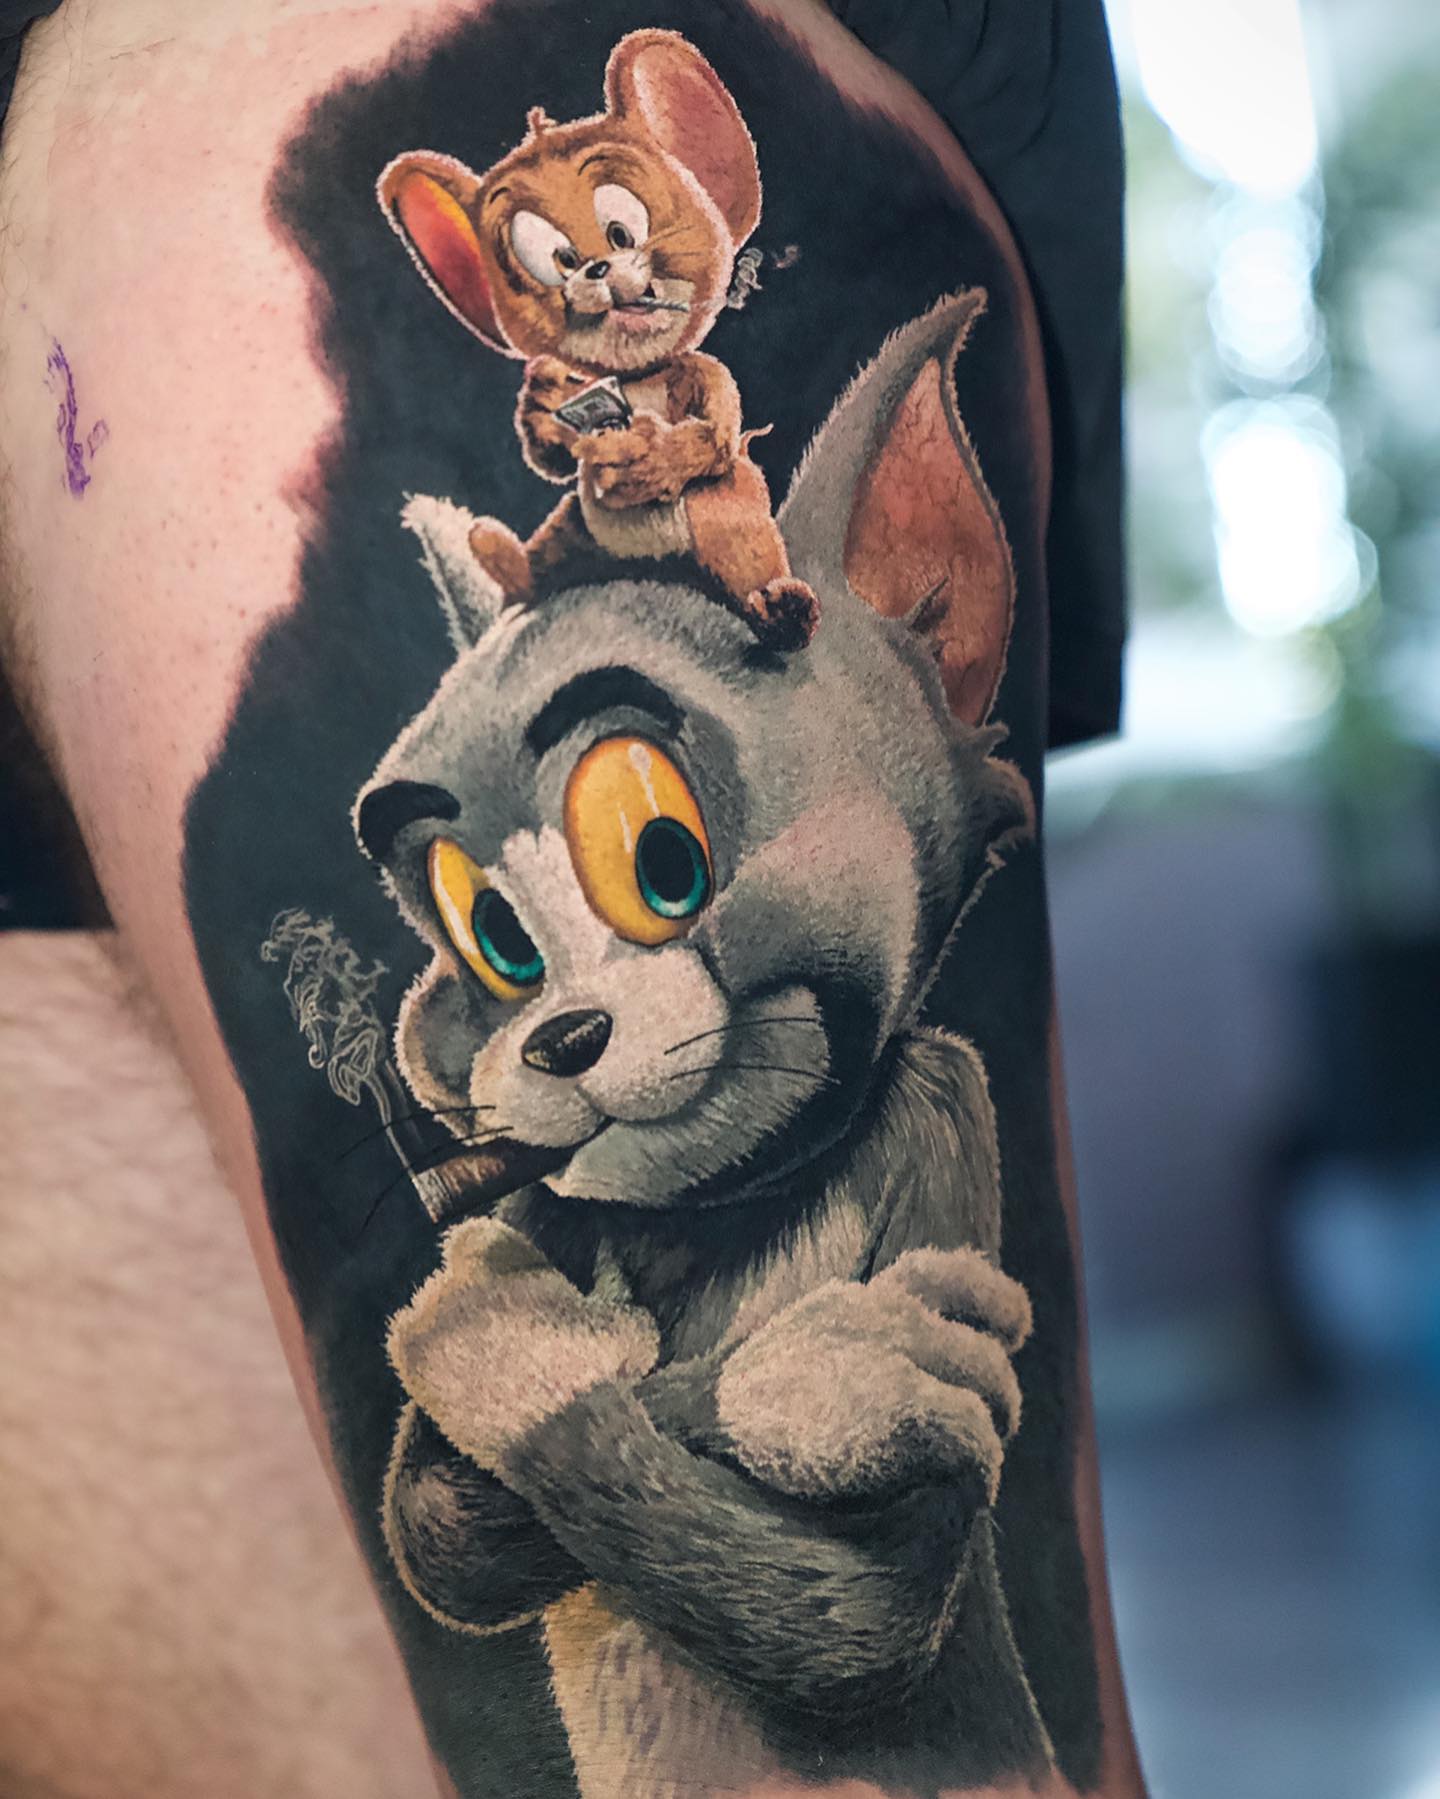 Tom and Jerry Tattoo - Best Tattoo Ideas Gallery